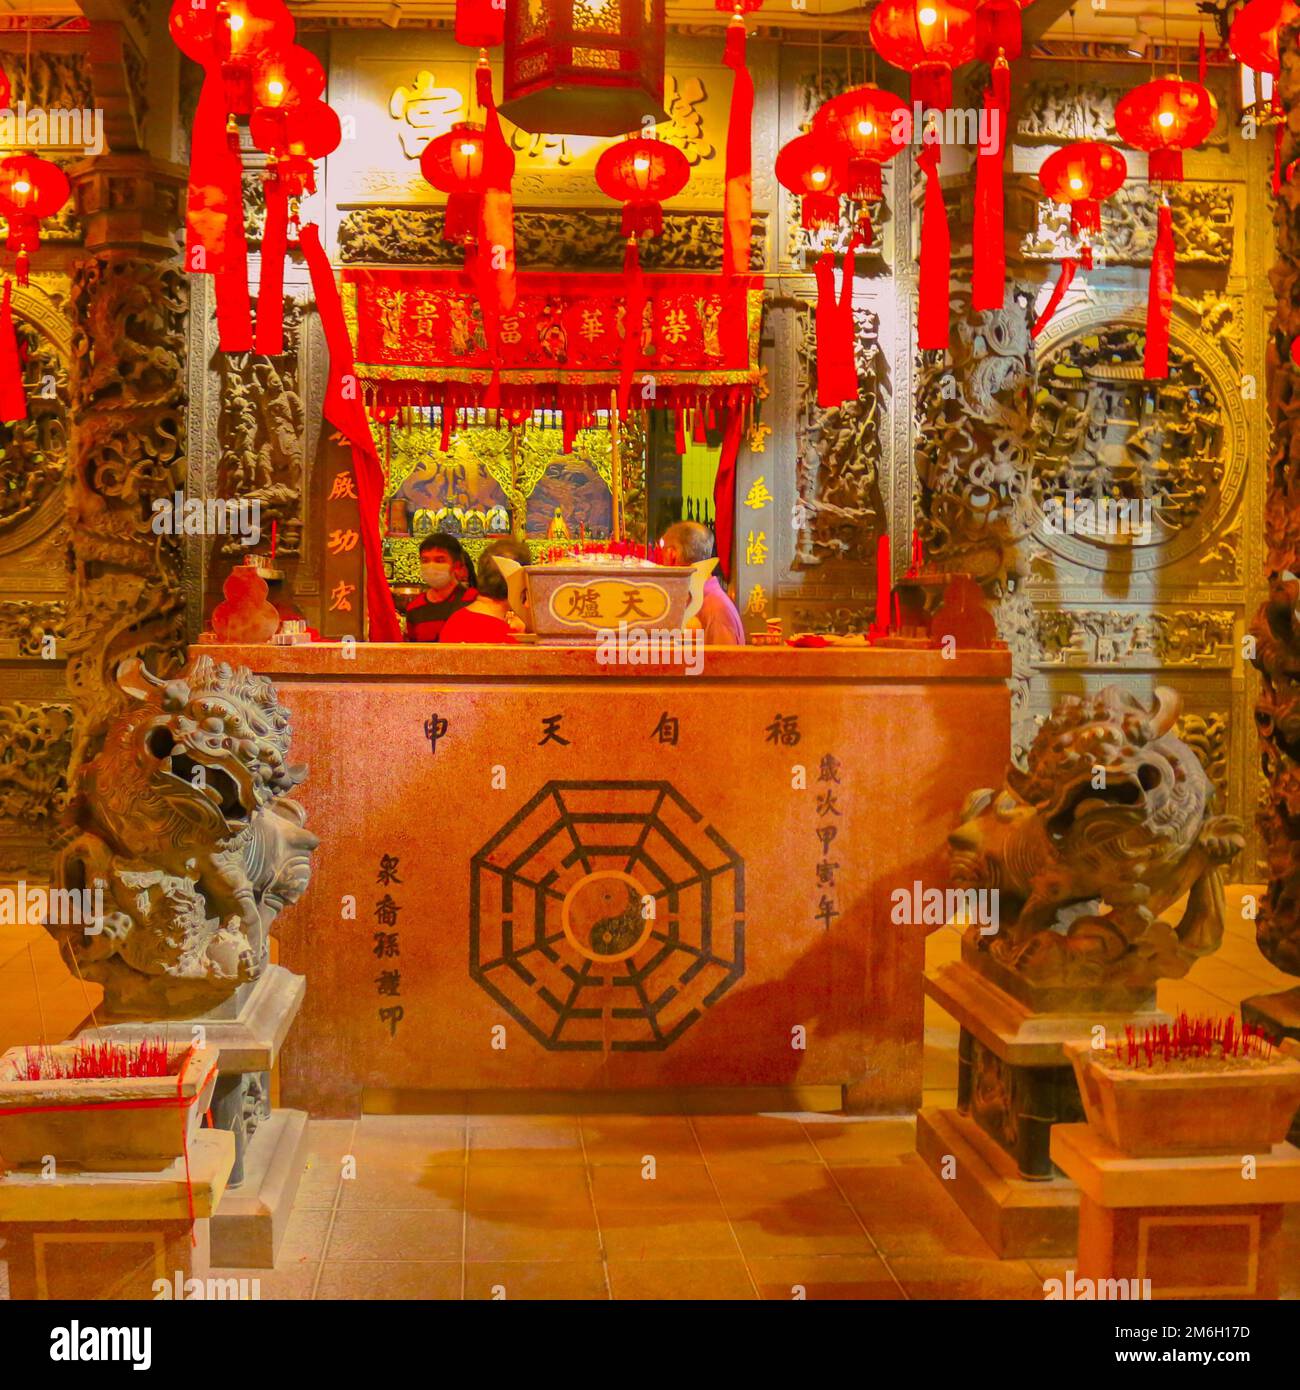 La réception d'un hôtel de style ancien autel de temple chinois à George Town, Penang, Malaisie Banque D'Images